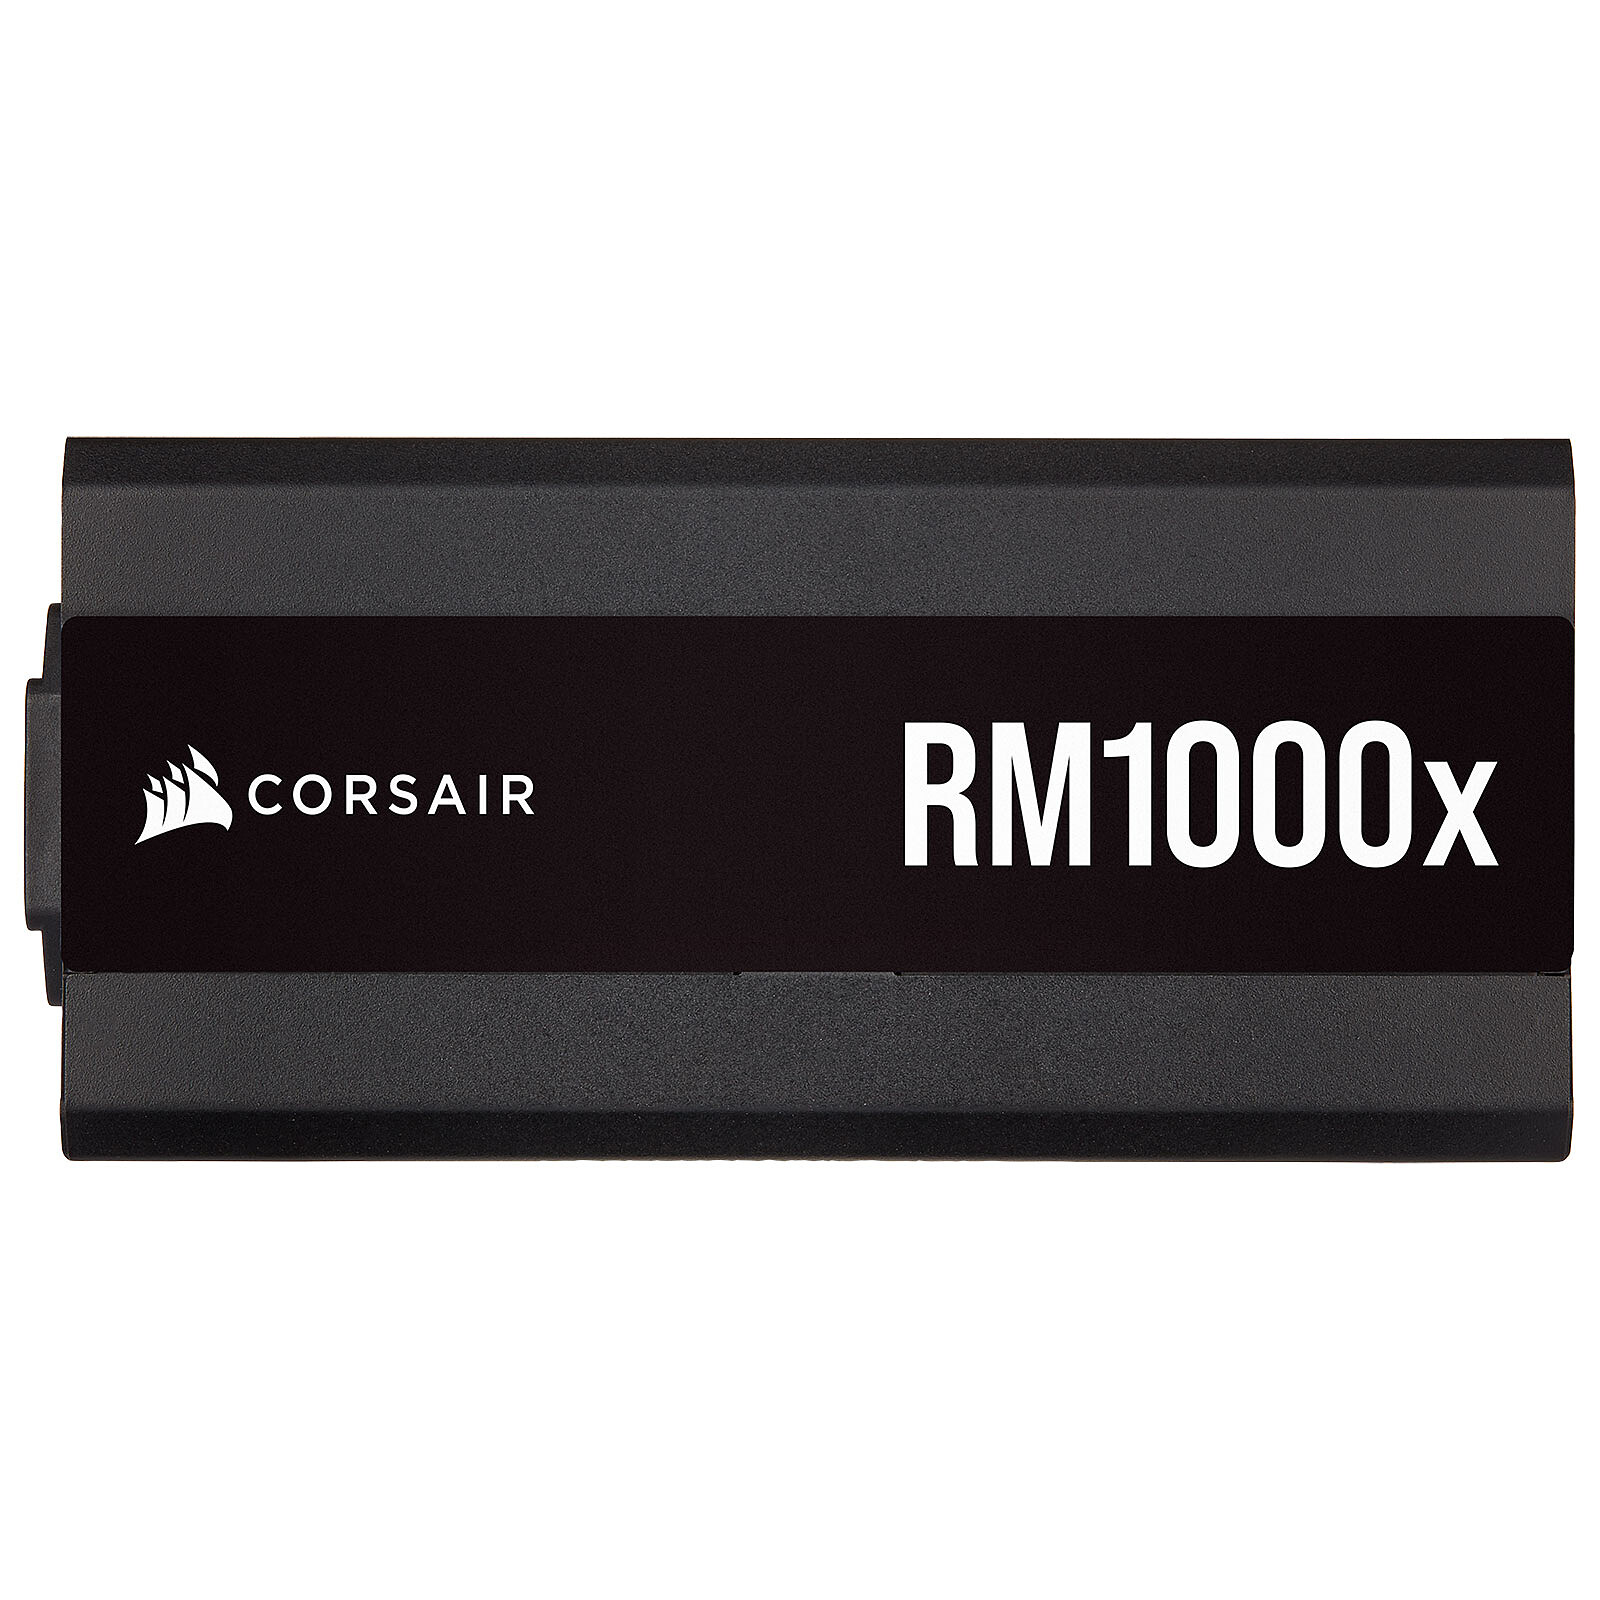 Corsair Alimentation Modulaire RM1000E 80+ Gold 1000W Argenté